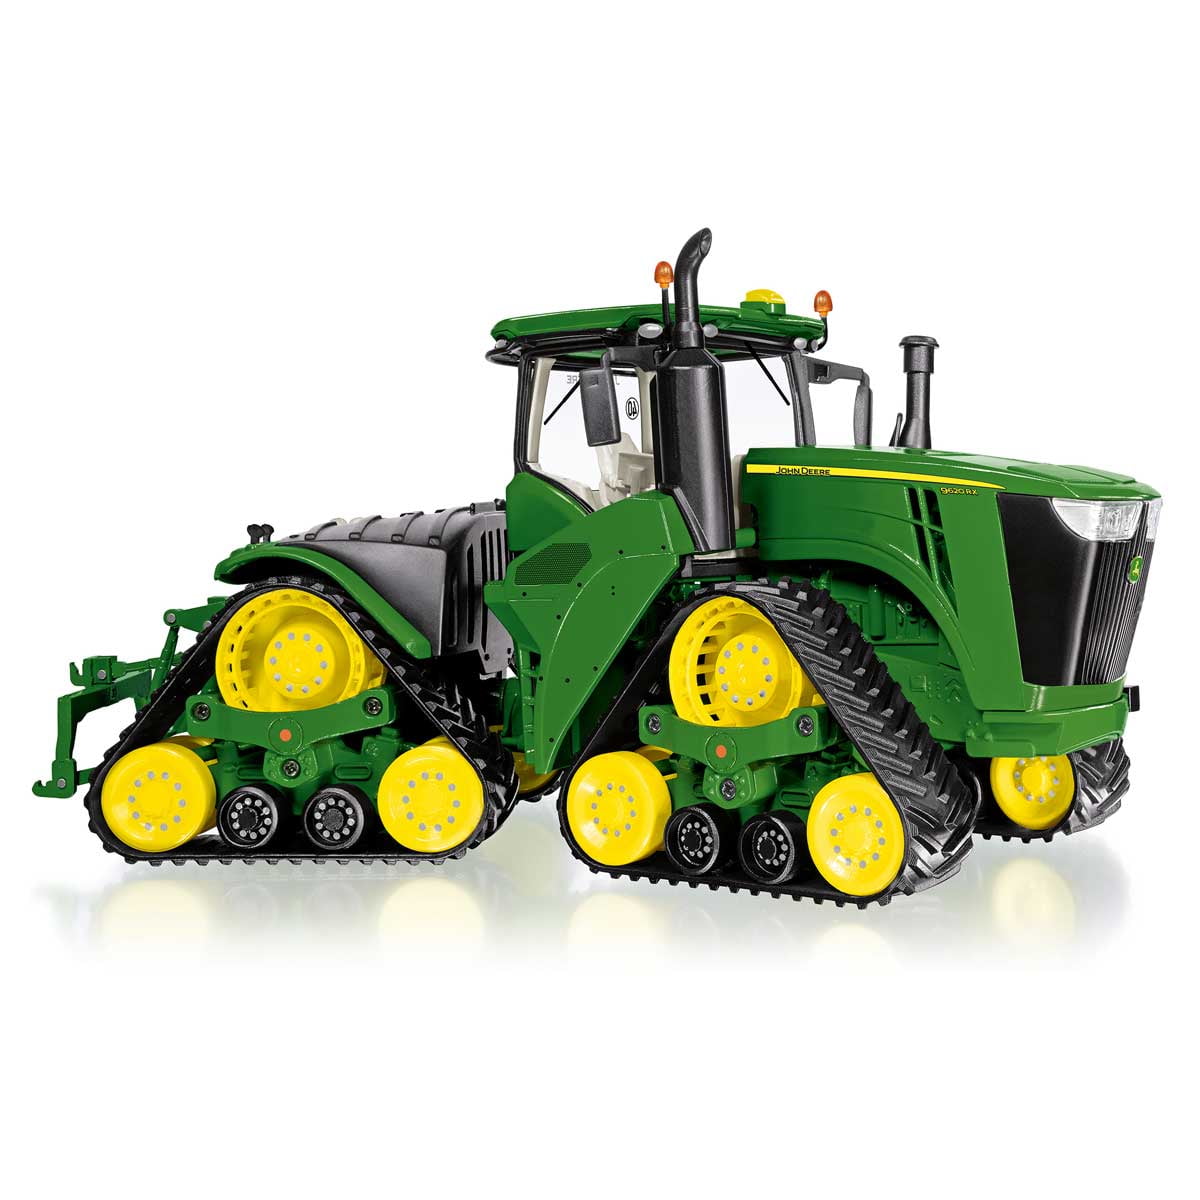 Wiking 077849 1:32 Tracteur John Deere 9620rx chenilles tracteur 